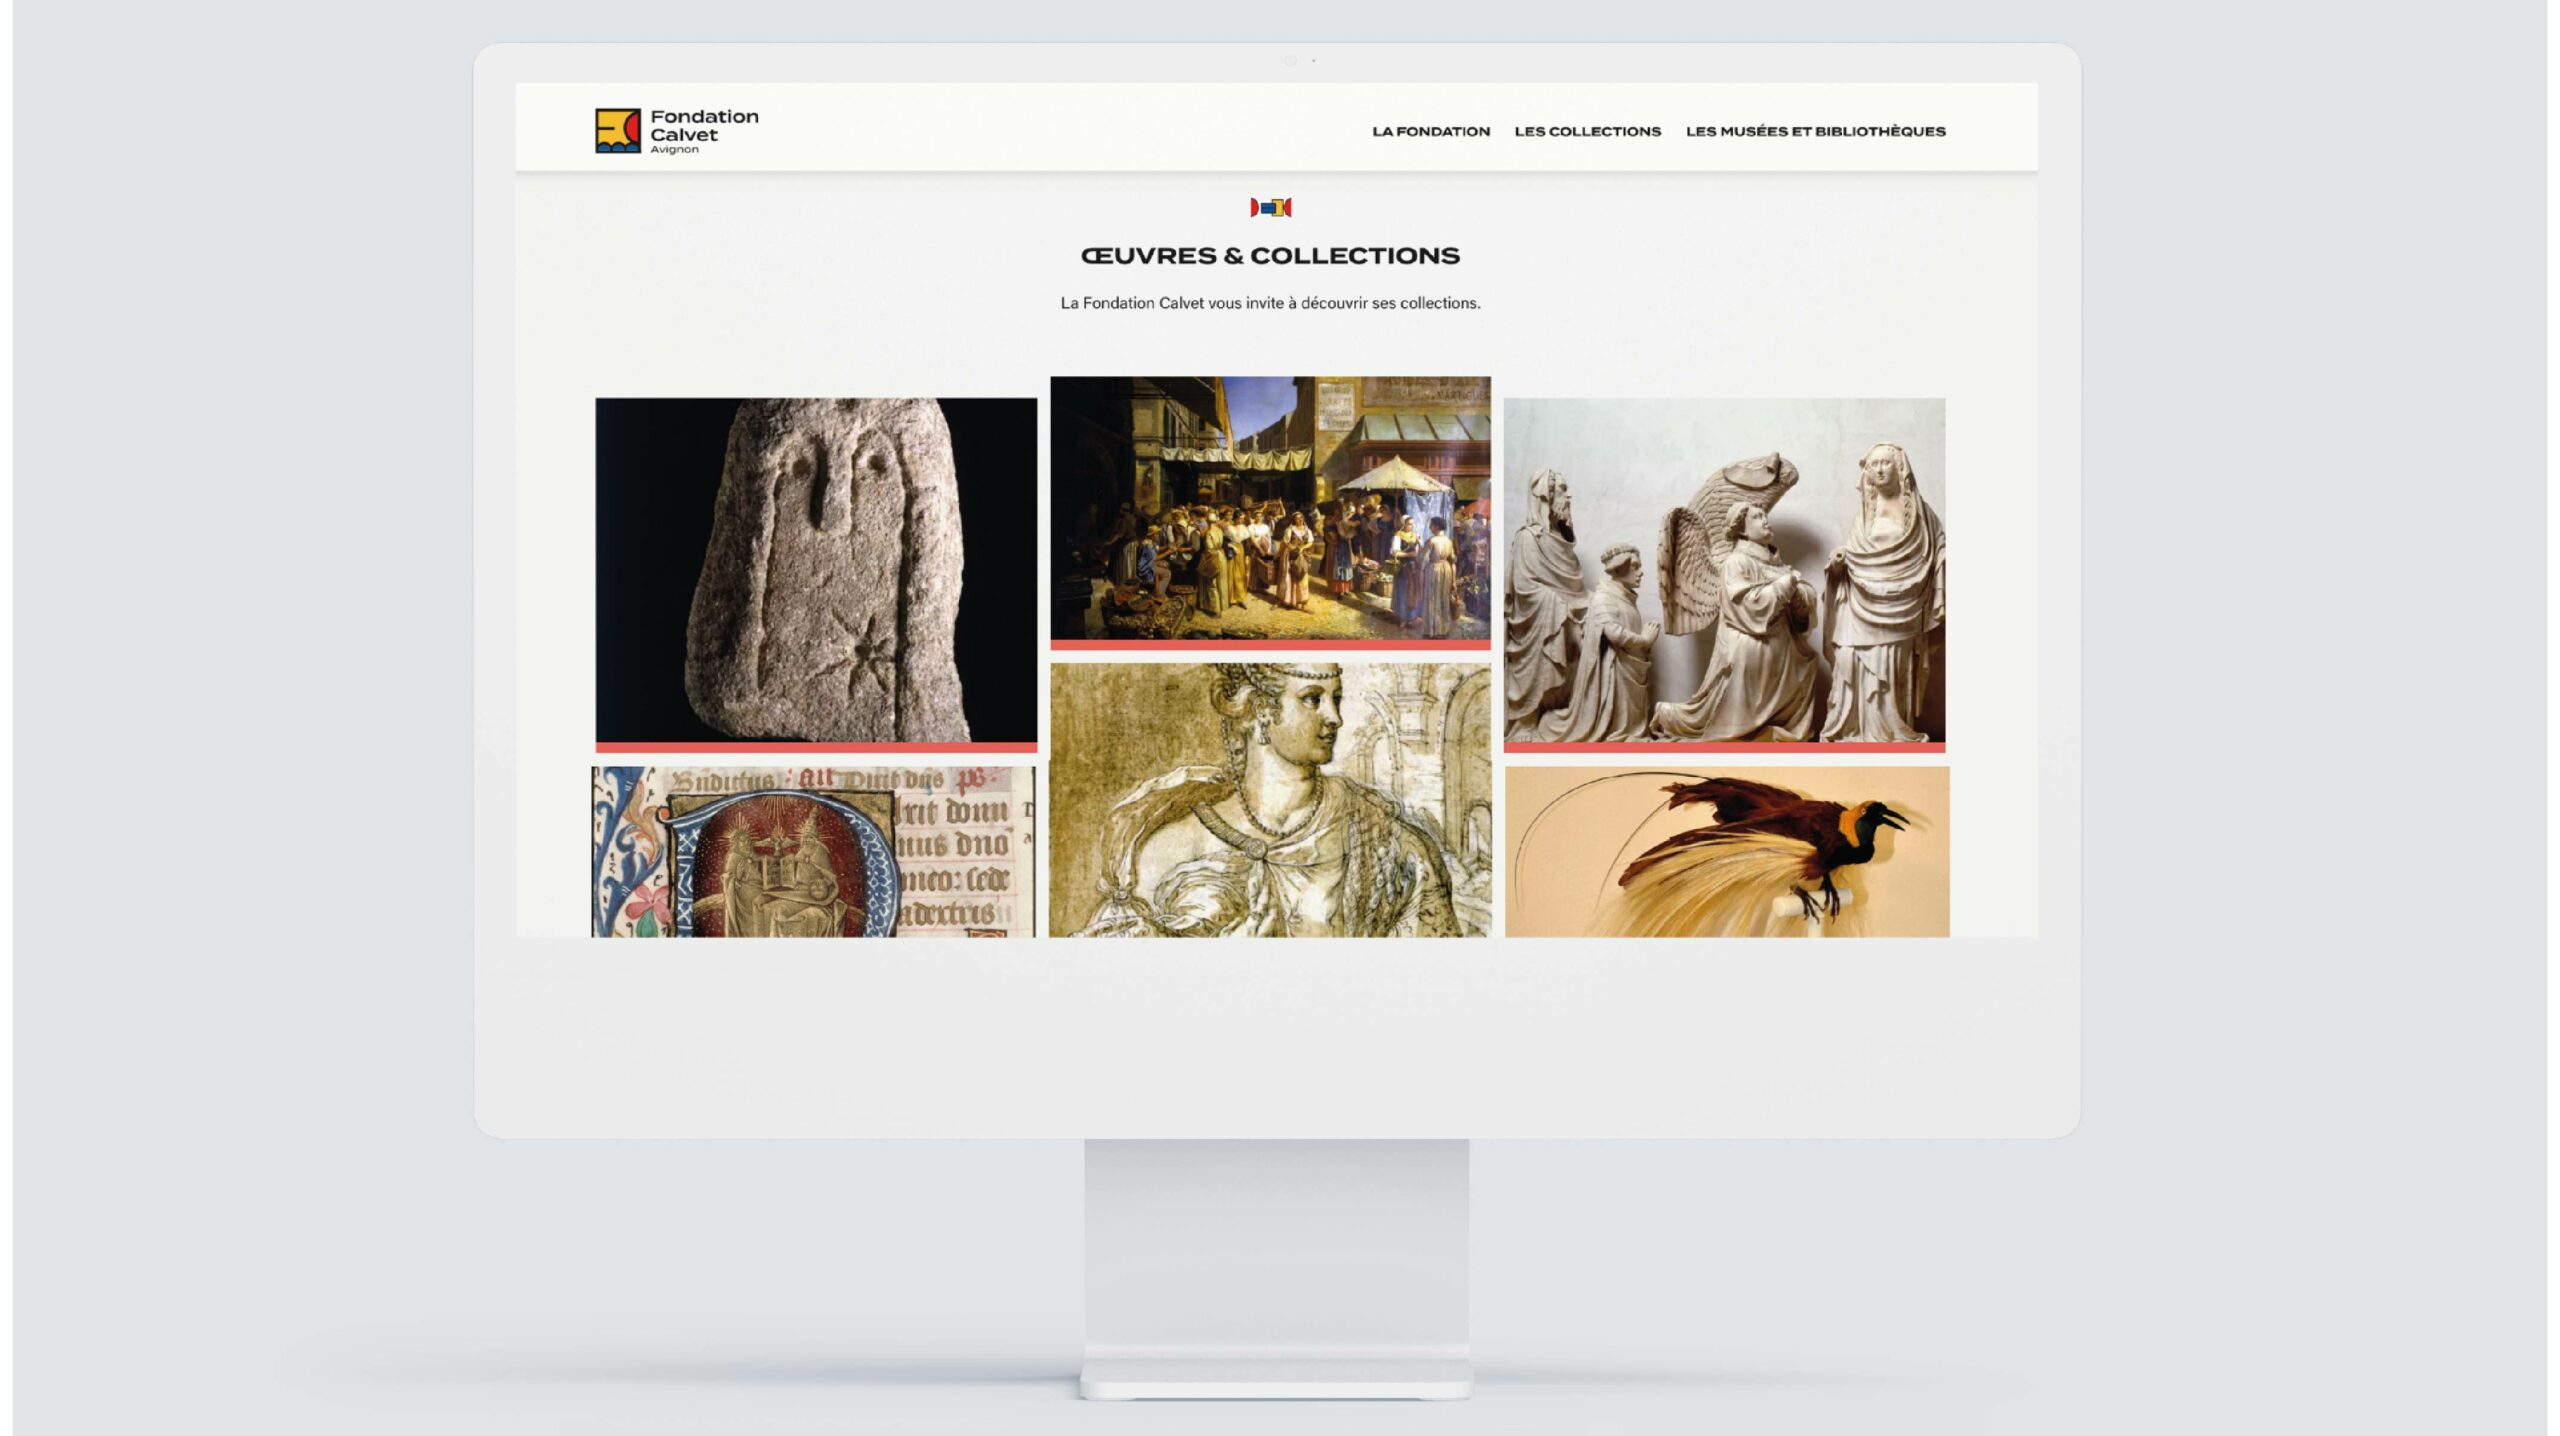 Le design system page oeuvre et collection de la Fondation Calvet à Avignon